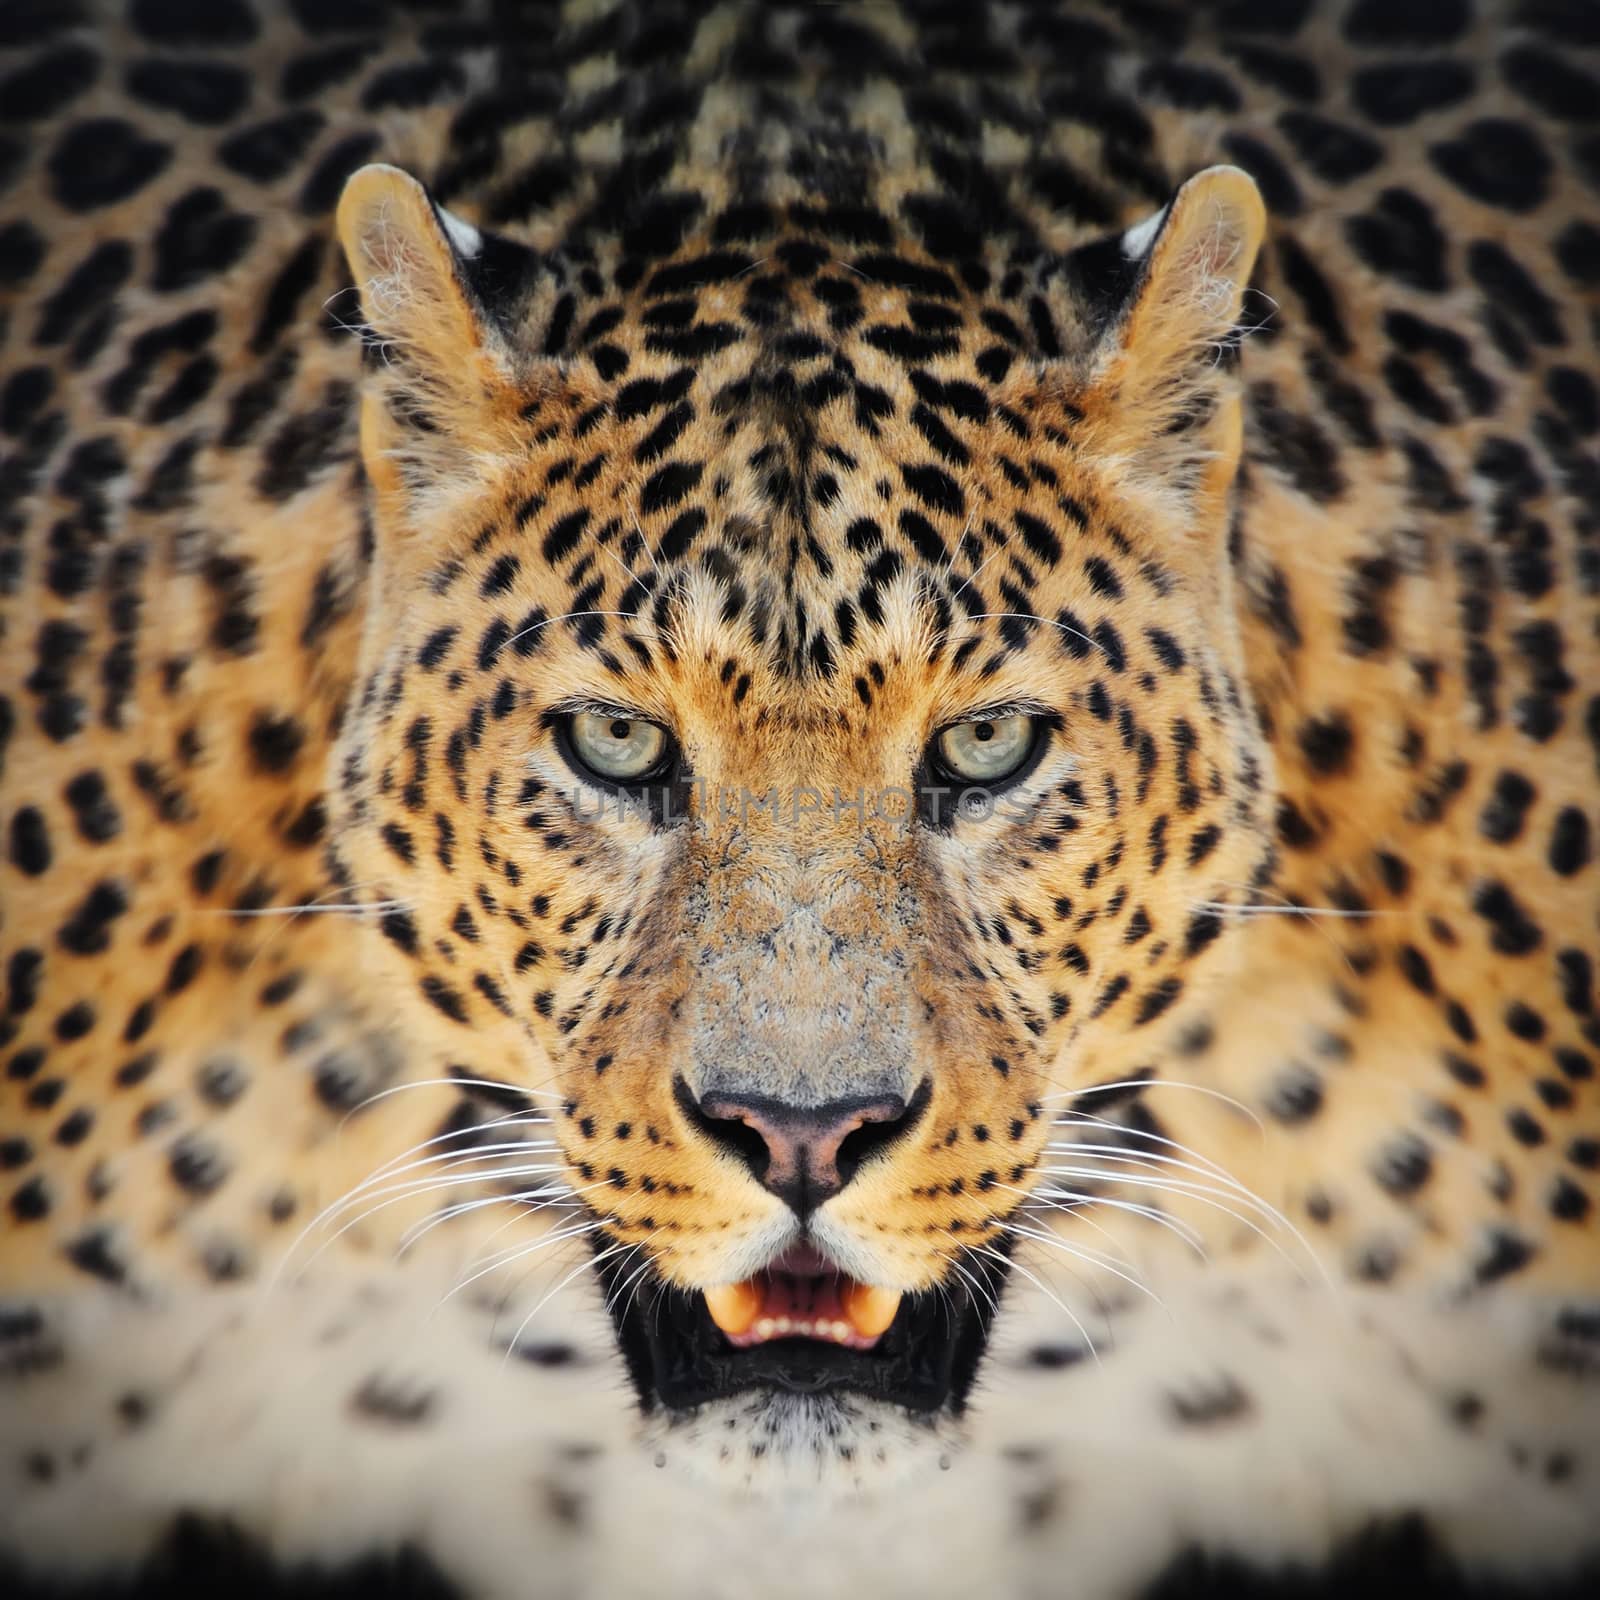 Close-up wild leopard portrait on the dark background